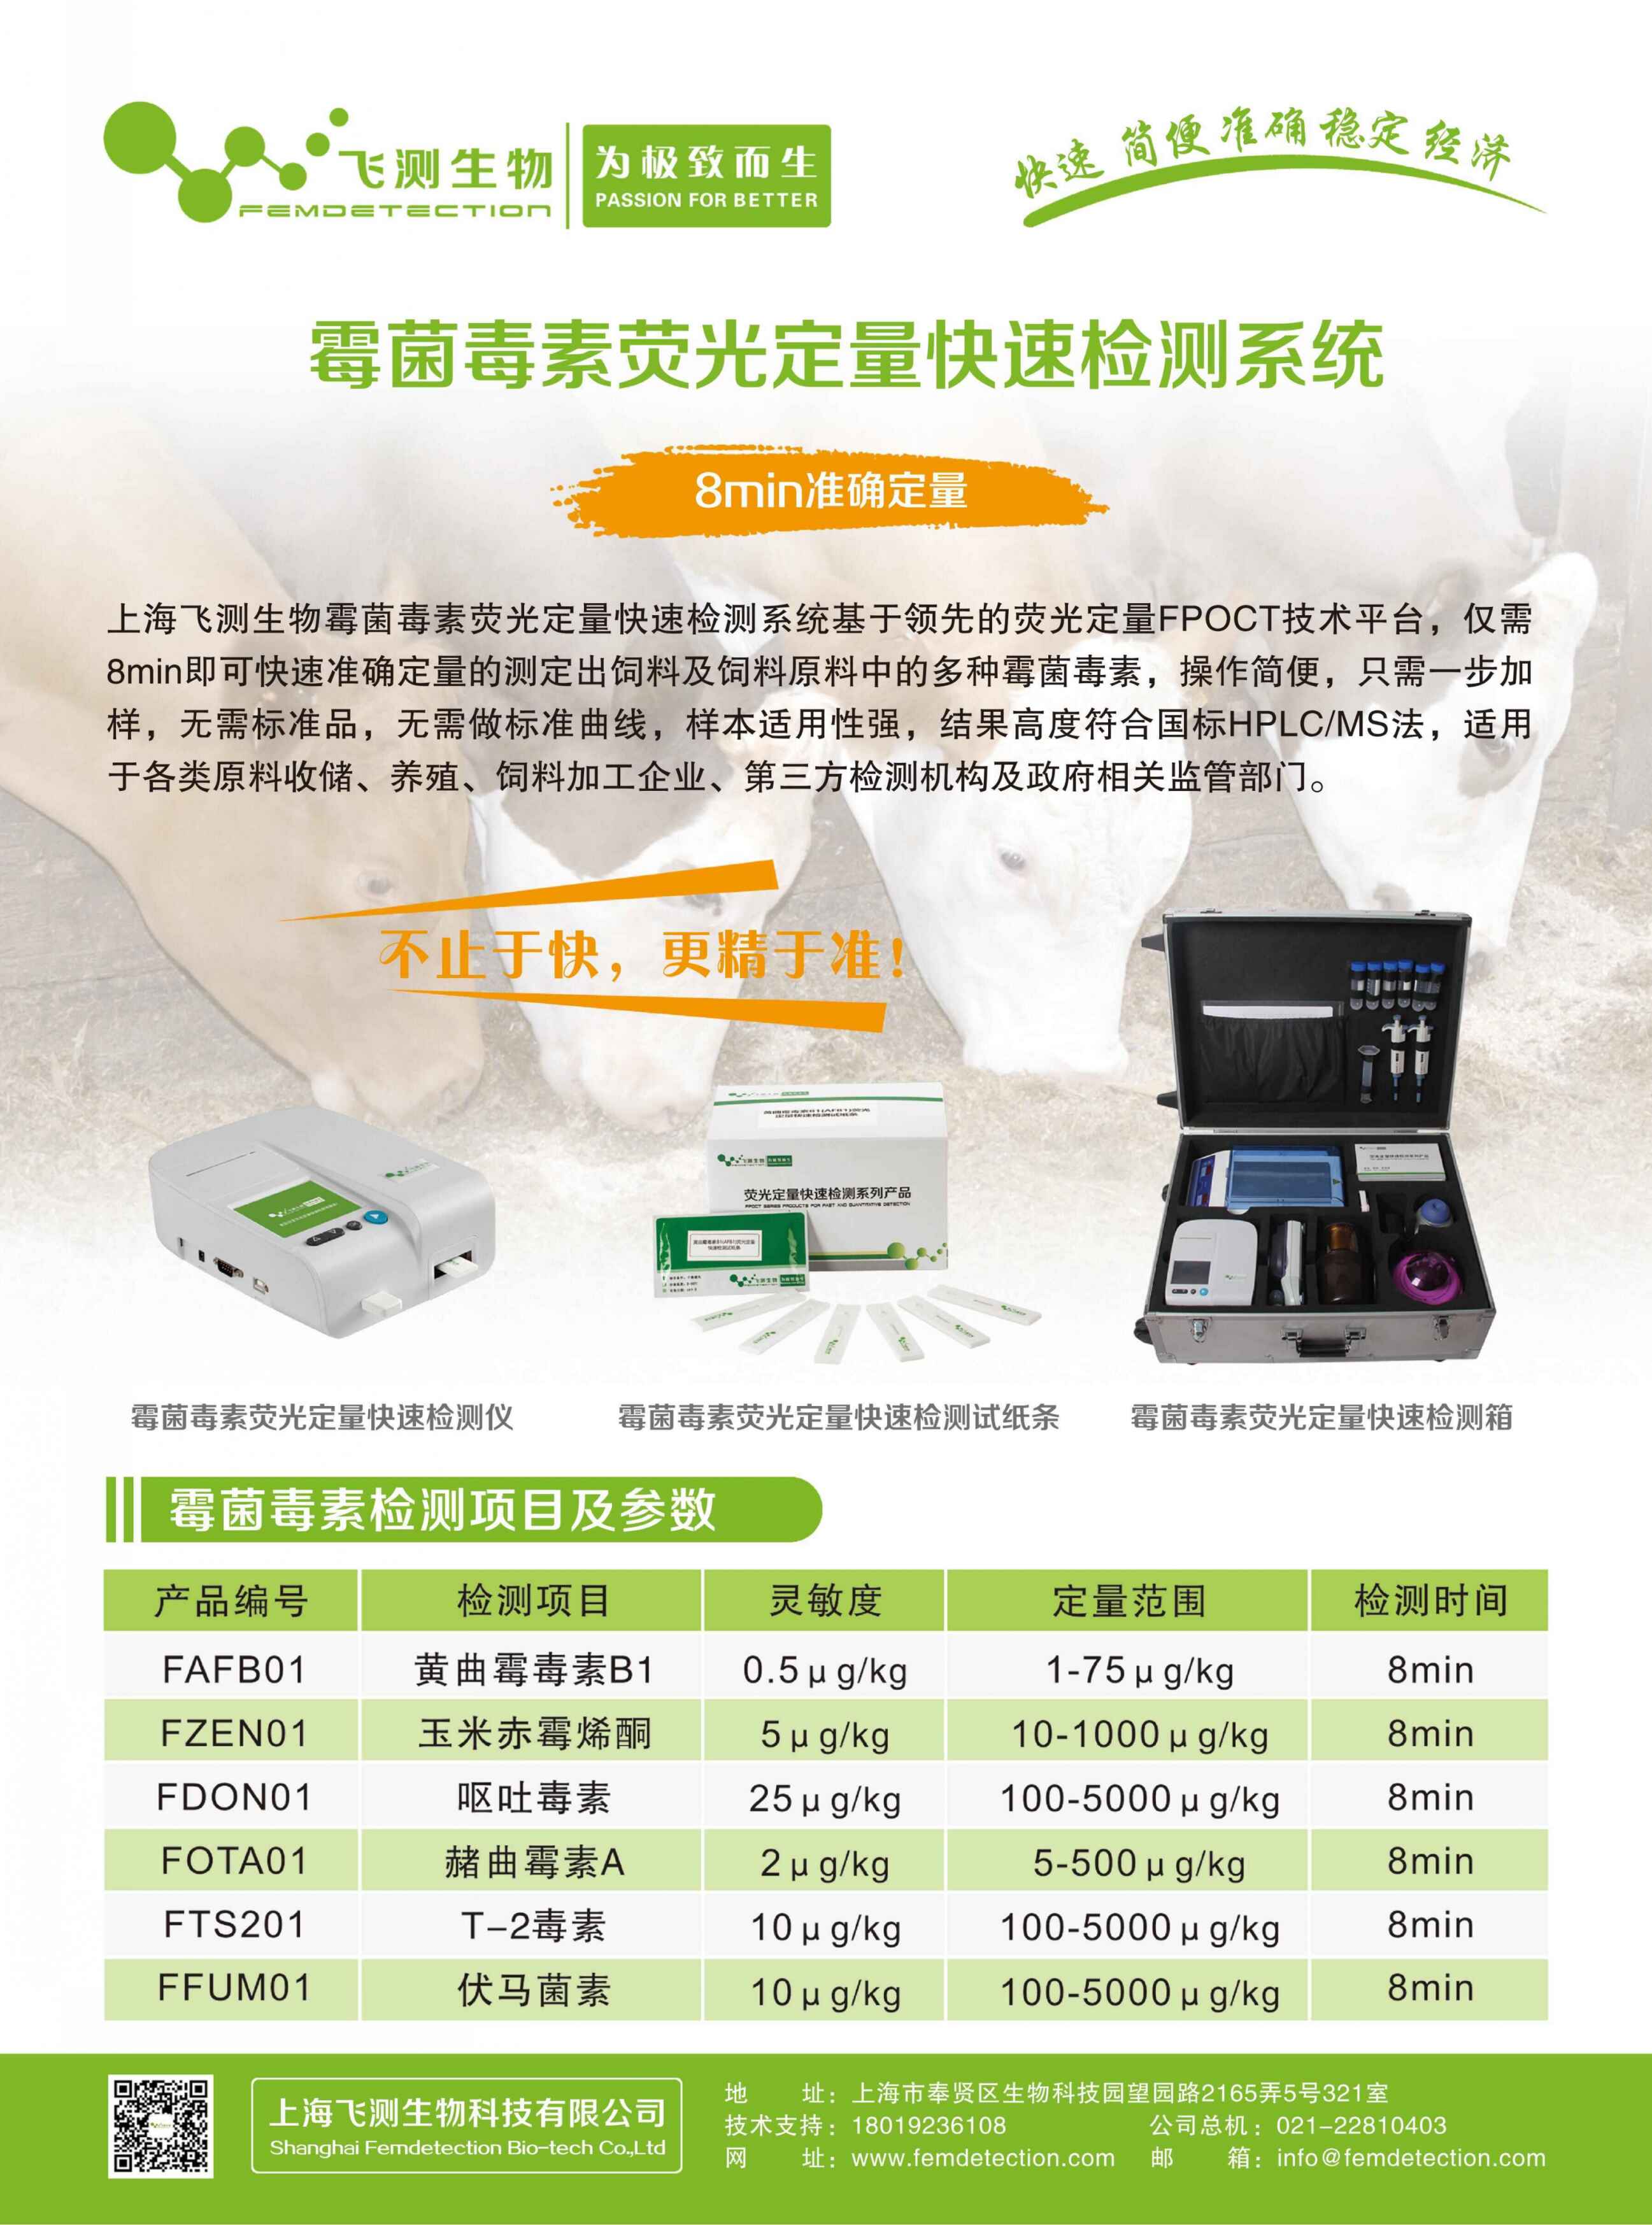 上海飞测生物黄曲霉毒素荧光定量快速检测系统在饲料及乳品检测领域的应用